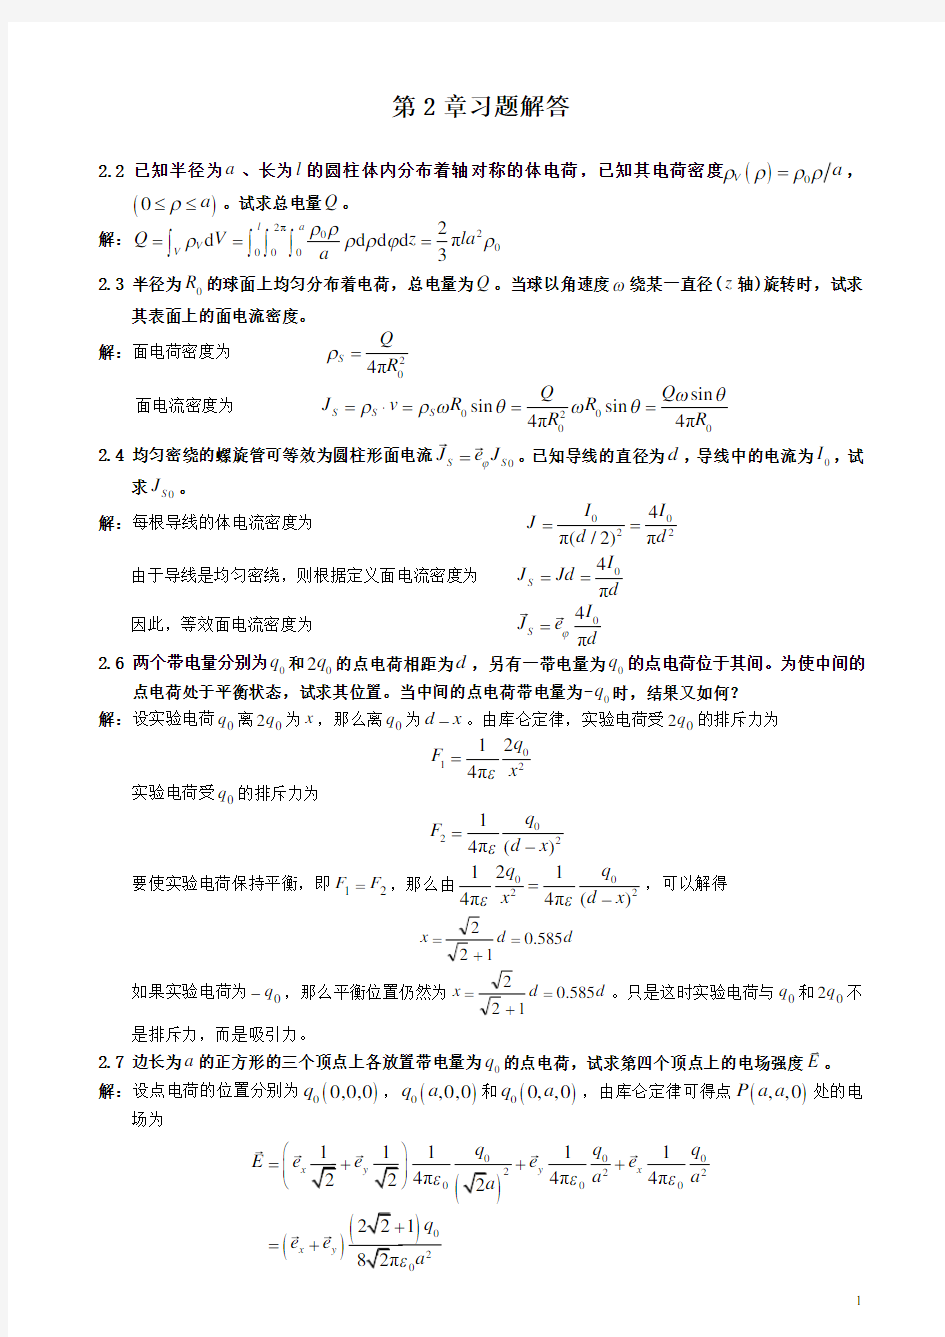 电磁场与电磁波理论(第二版)(徐立勤,曹伟)第2章习题解答